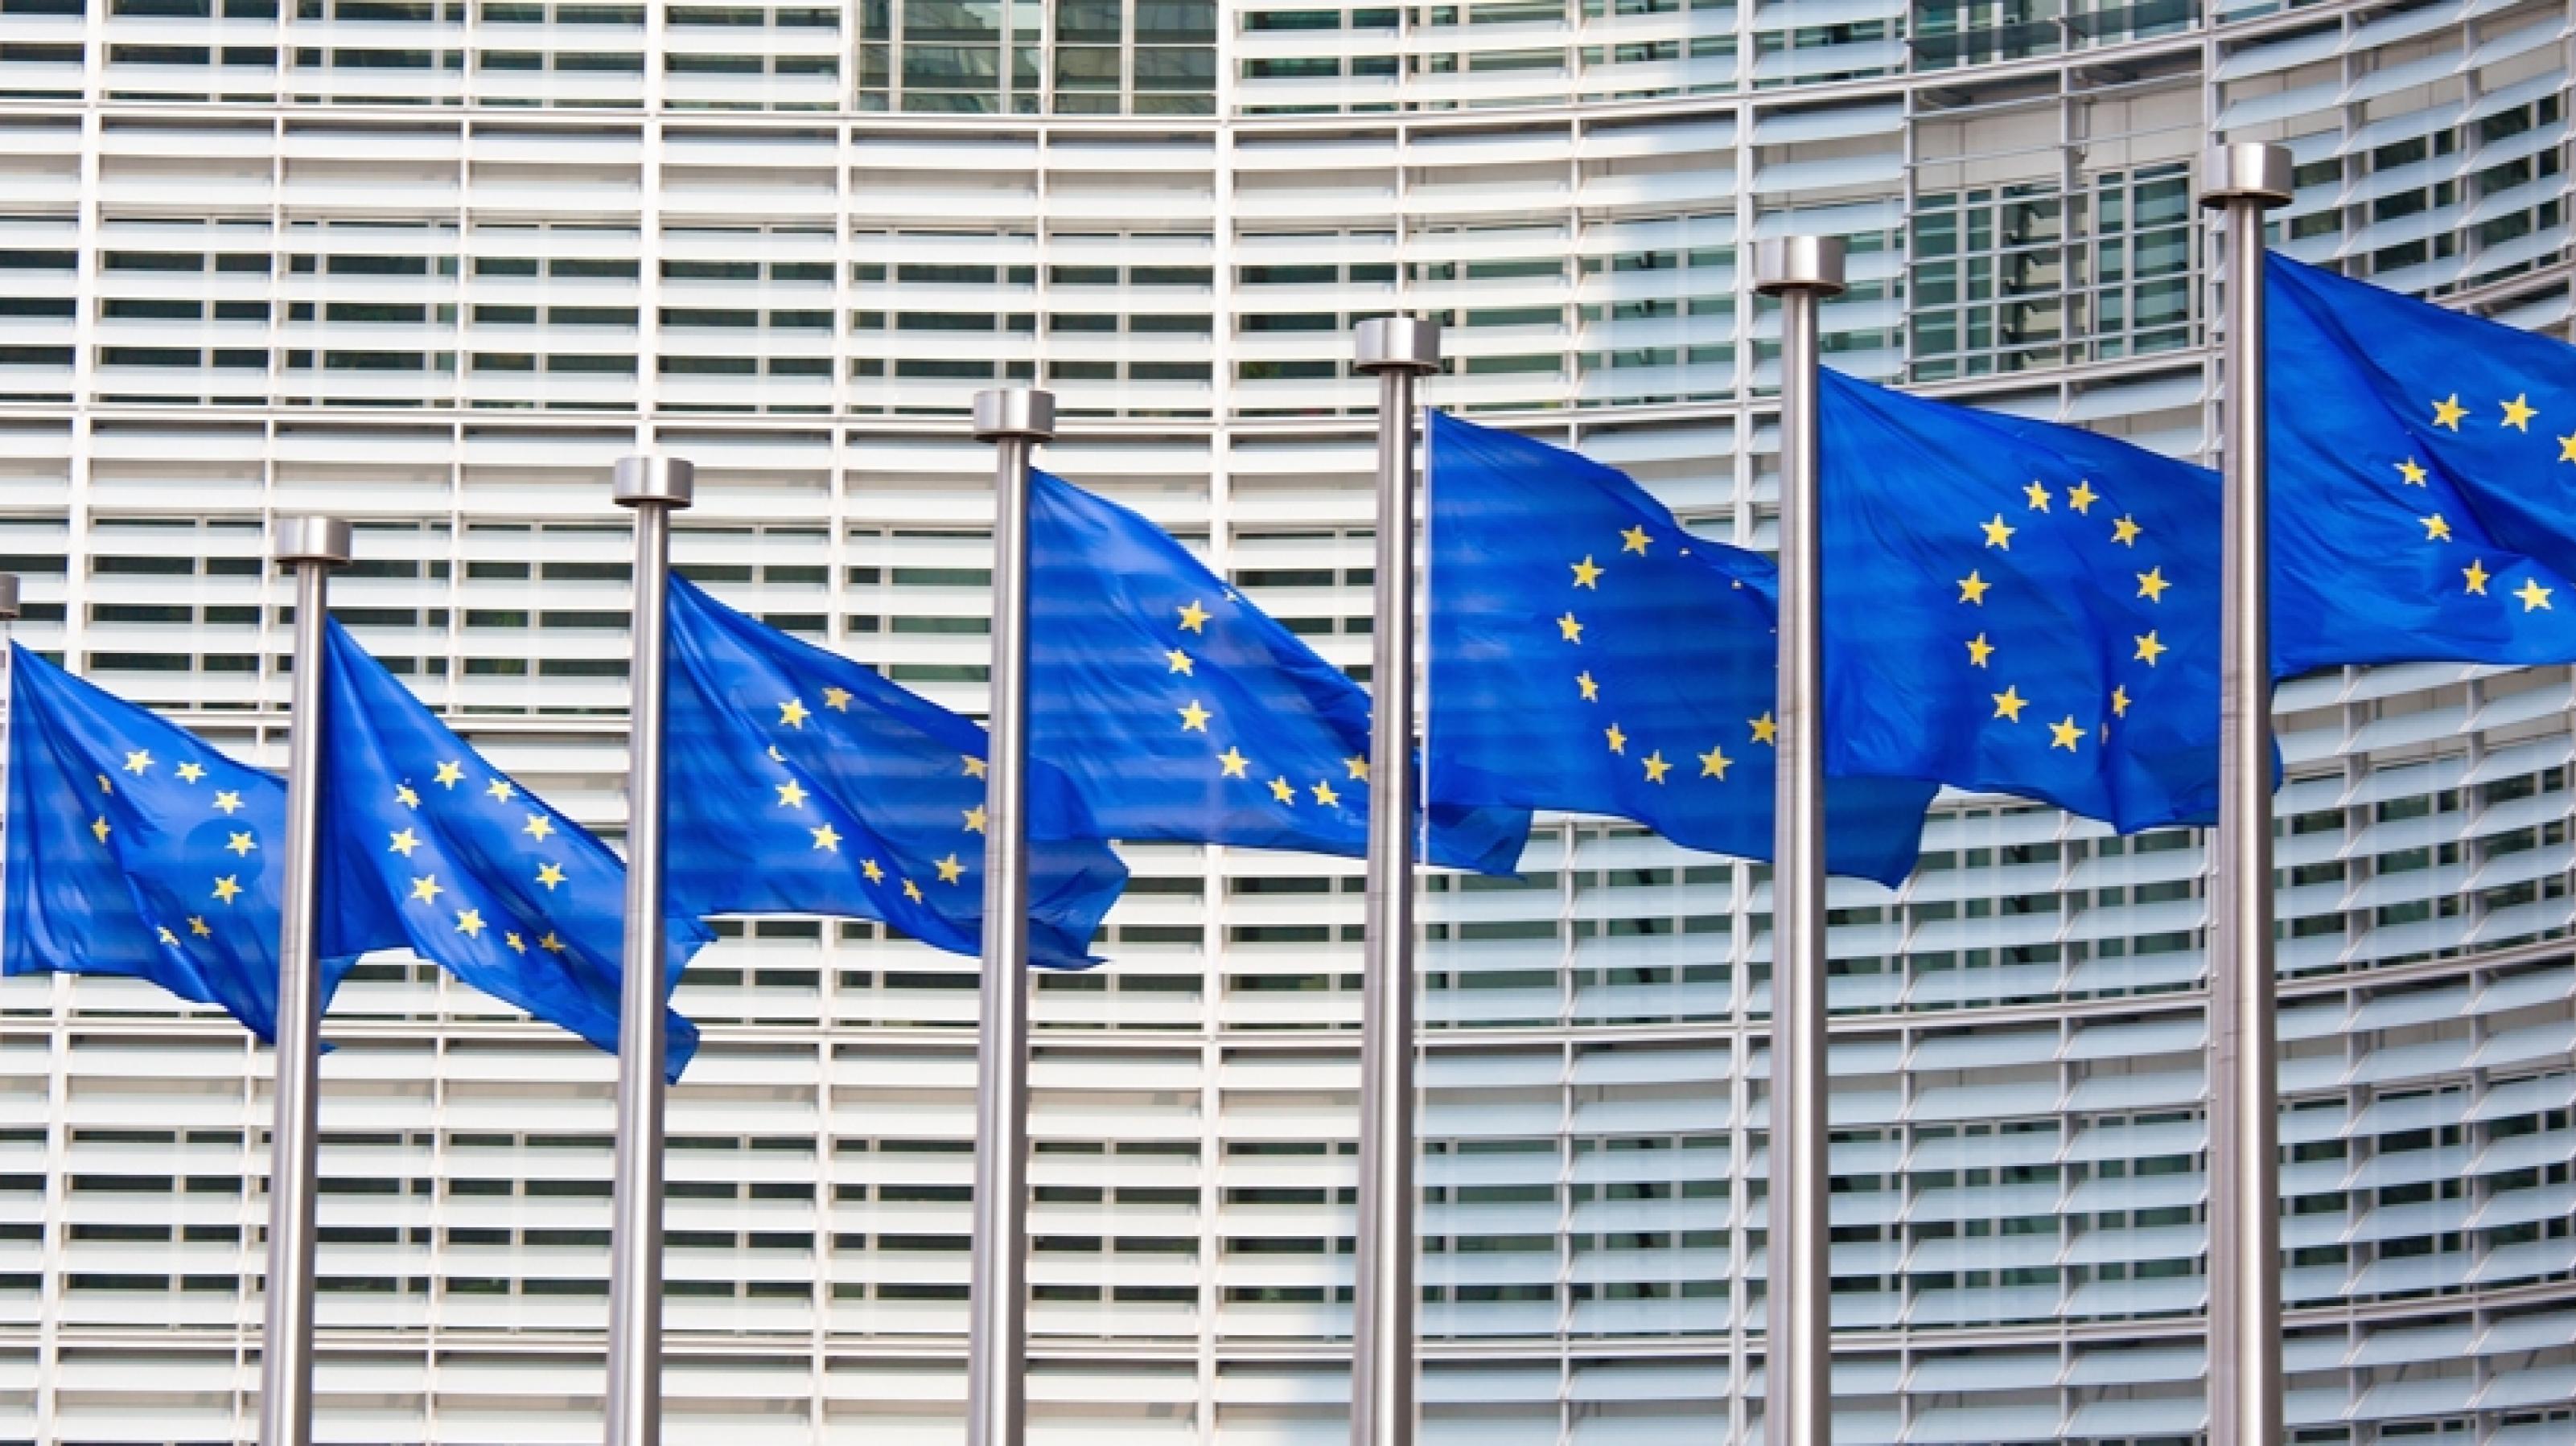 Die blauen Europaflaggen mit dem goldenen Sternenkranz wehen vor dem Gebäude der EU-Kommission in Brüssel.